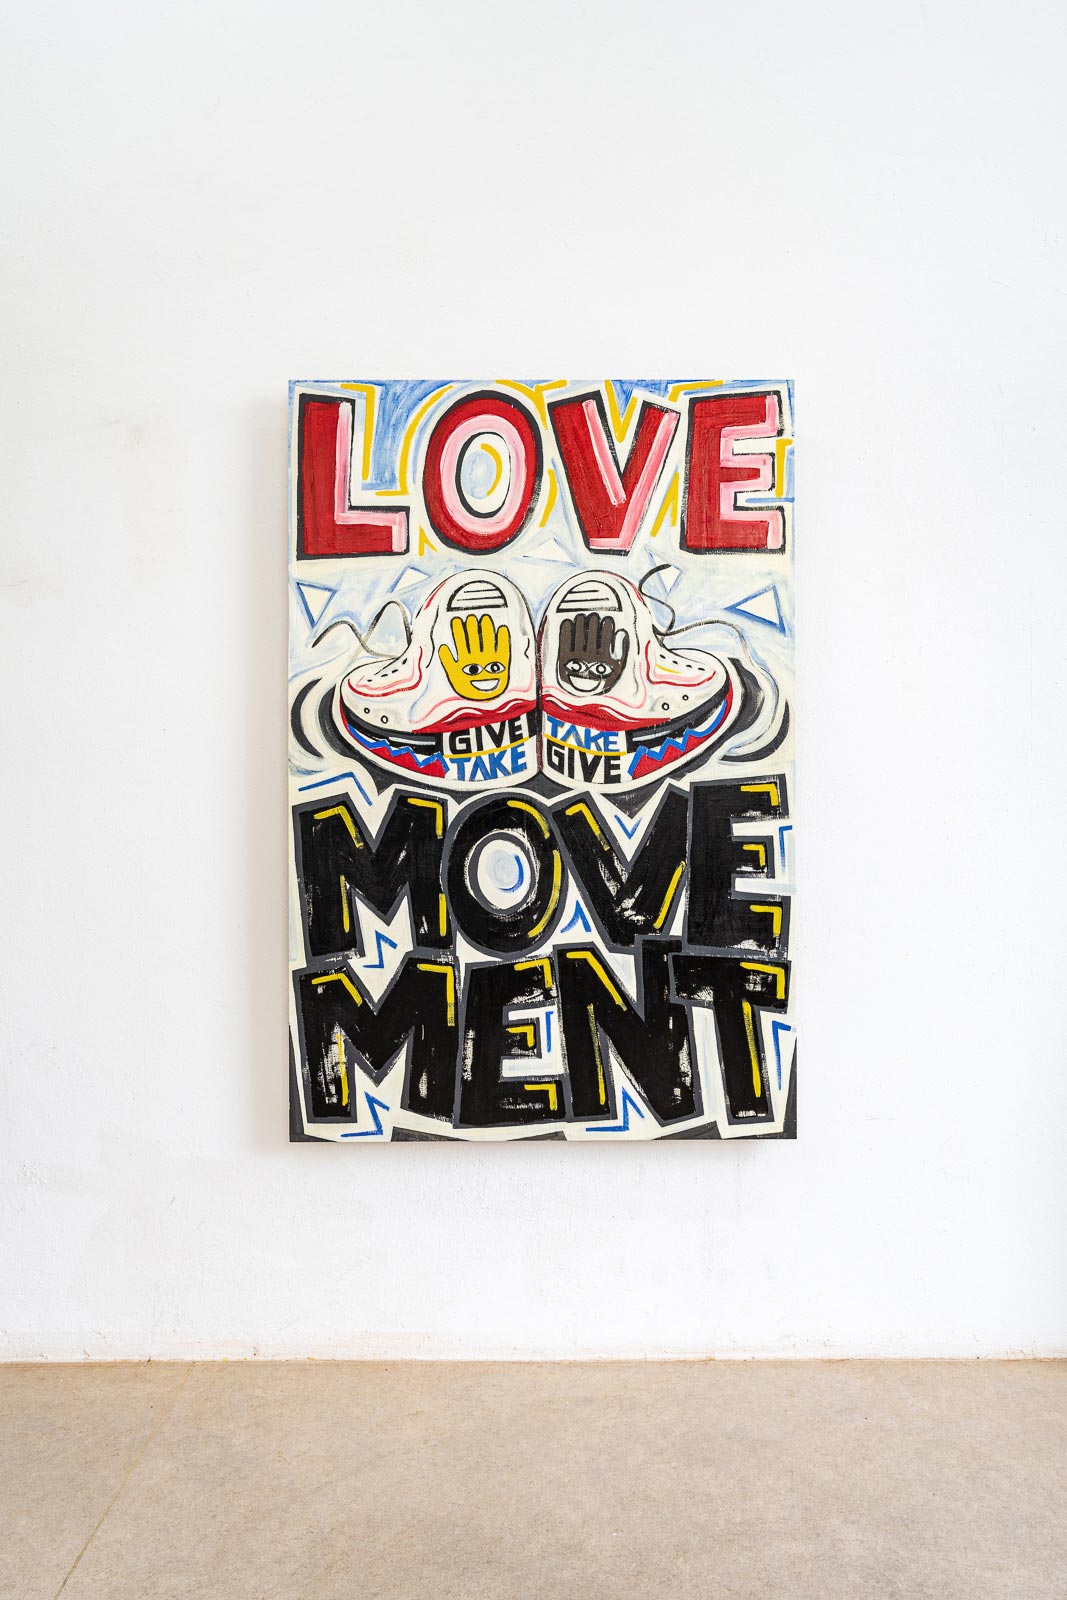 Pierre von Helden – Malerei – Love Movement